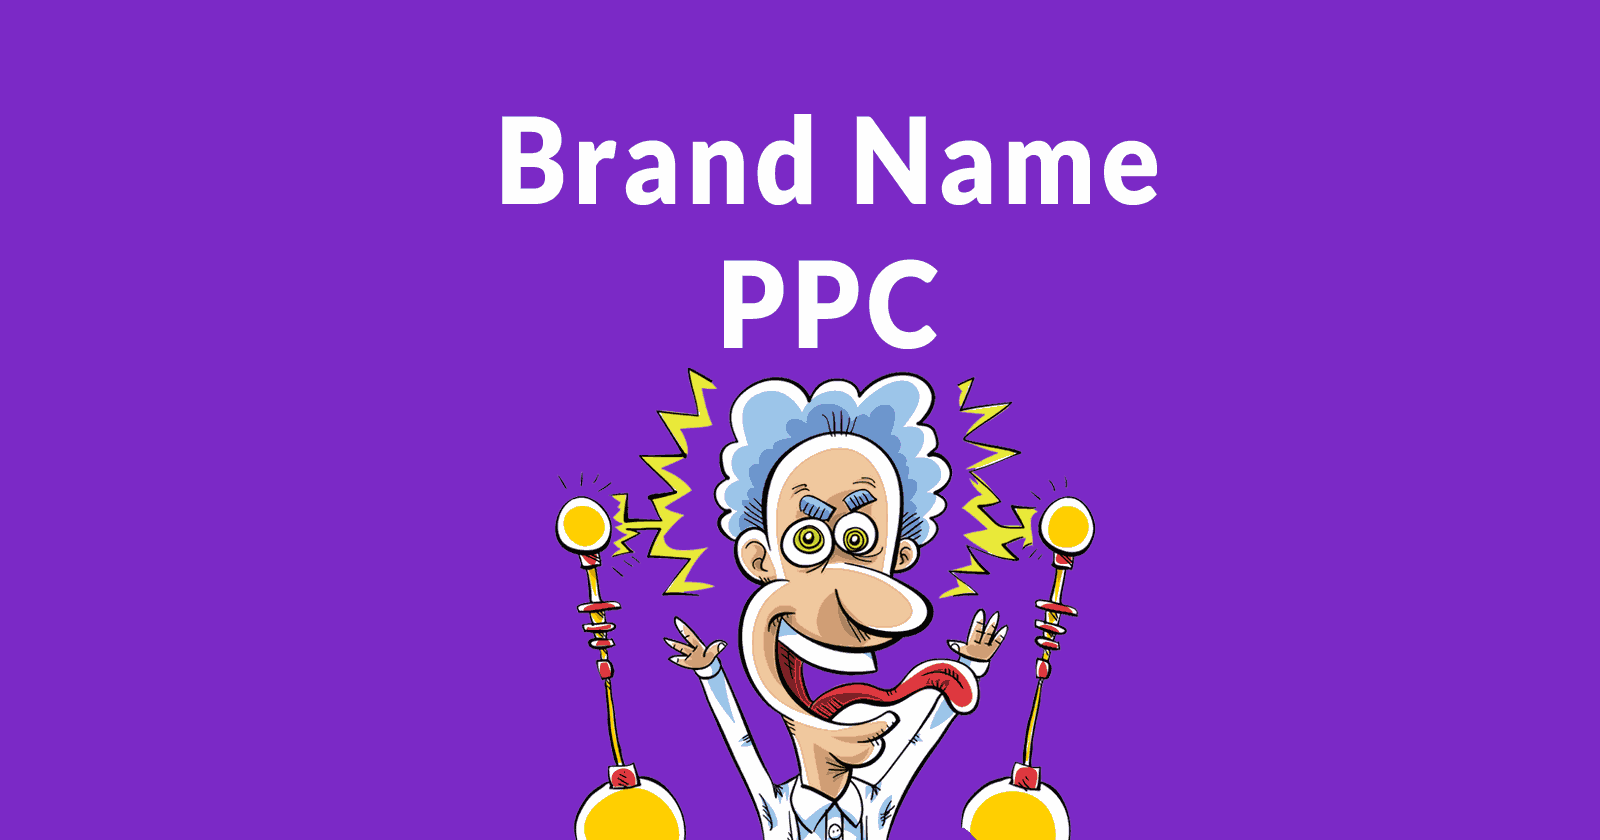 Brand Name PPC